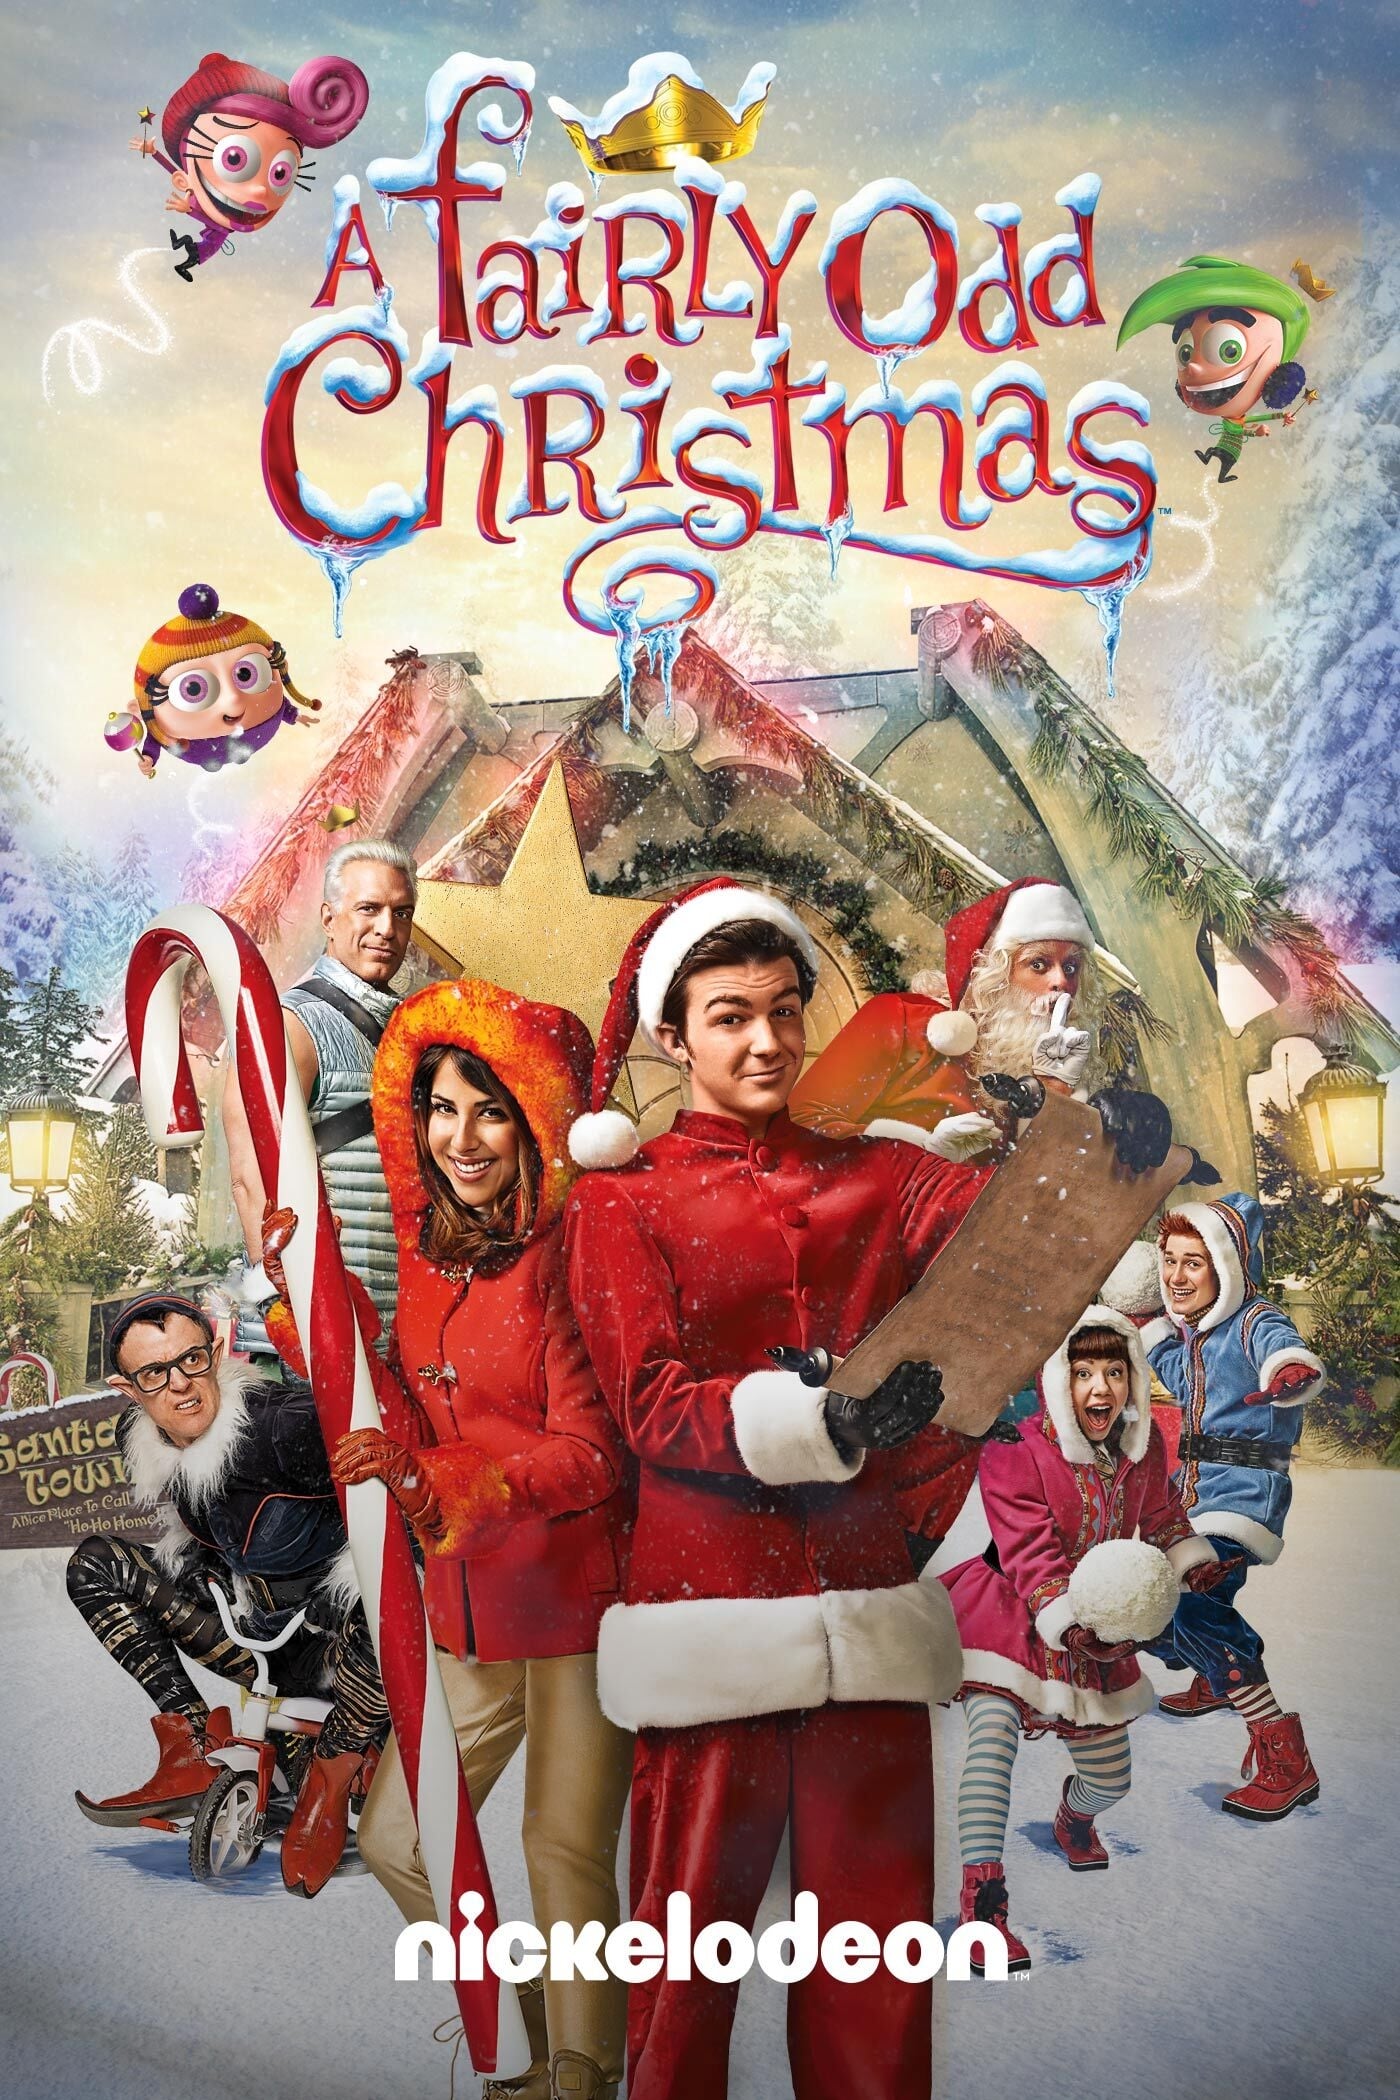 EN - A Fairly Odd Christmas (2013)